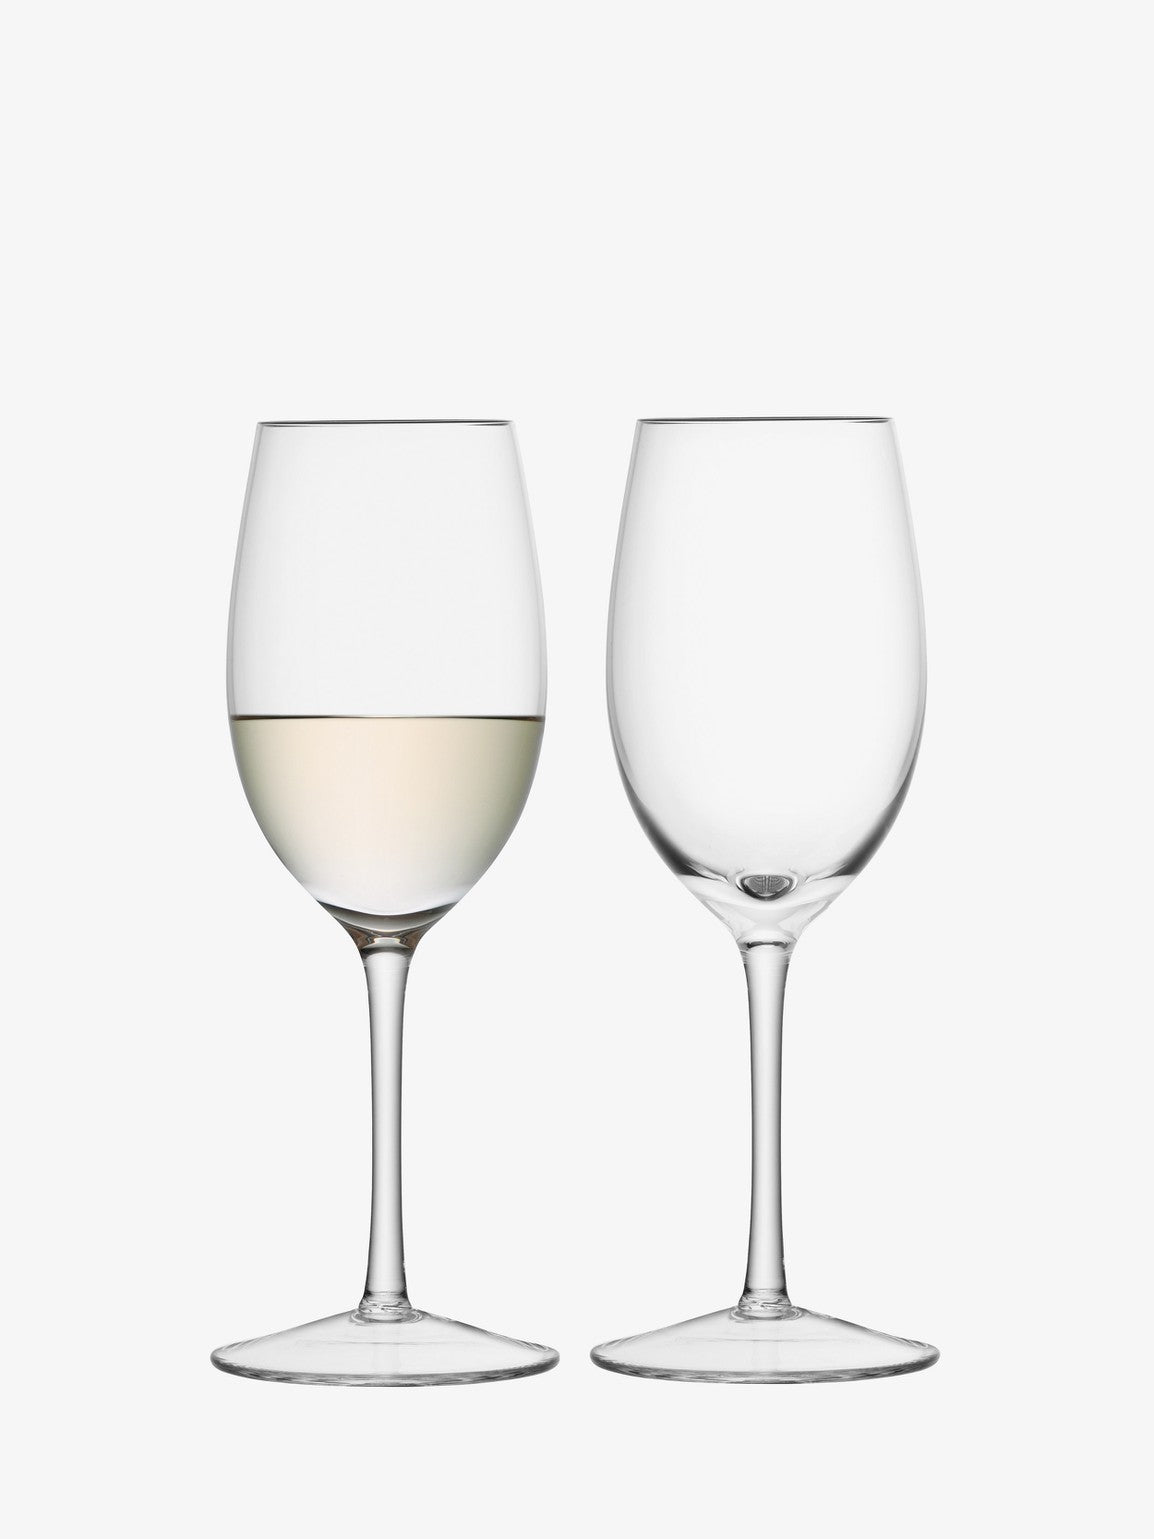 White Wine Glasses